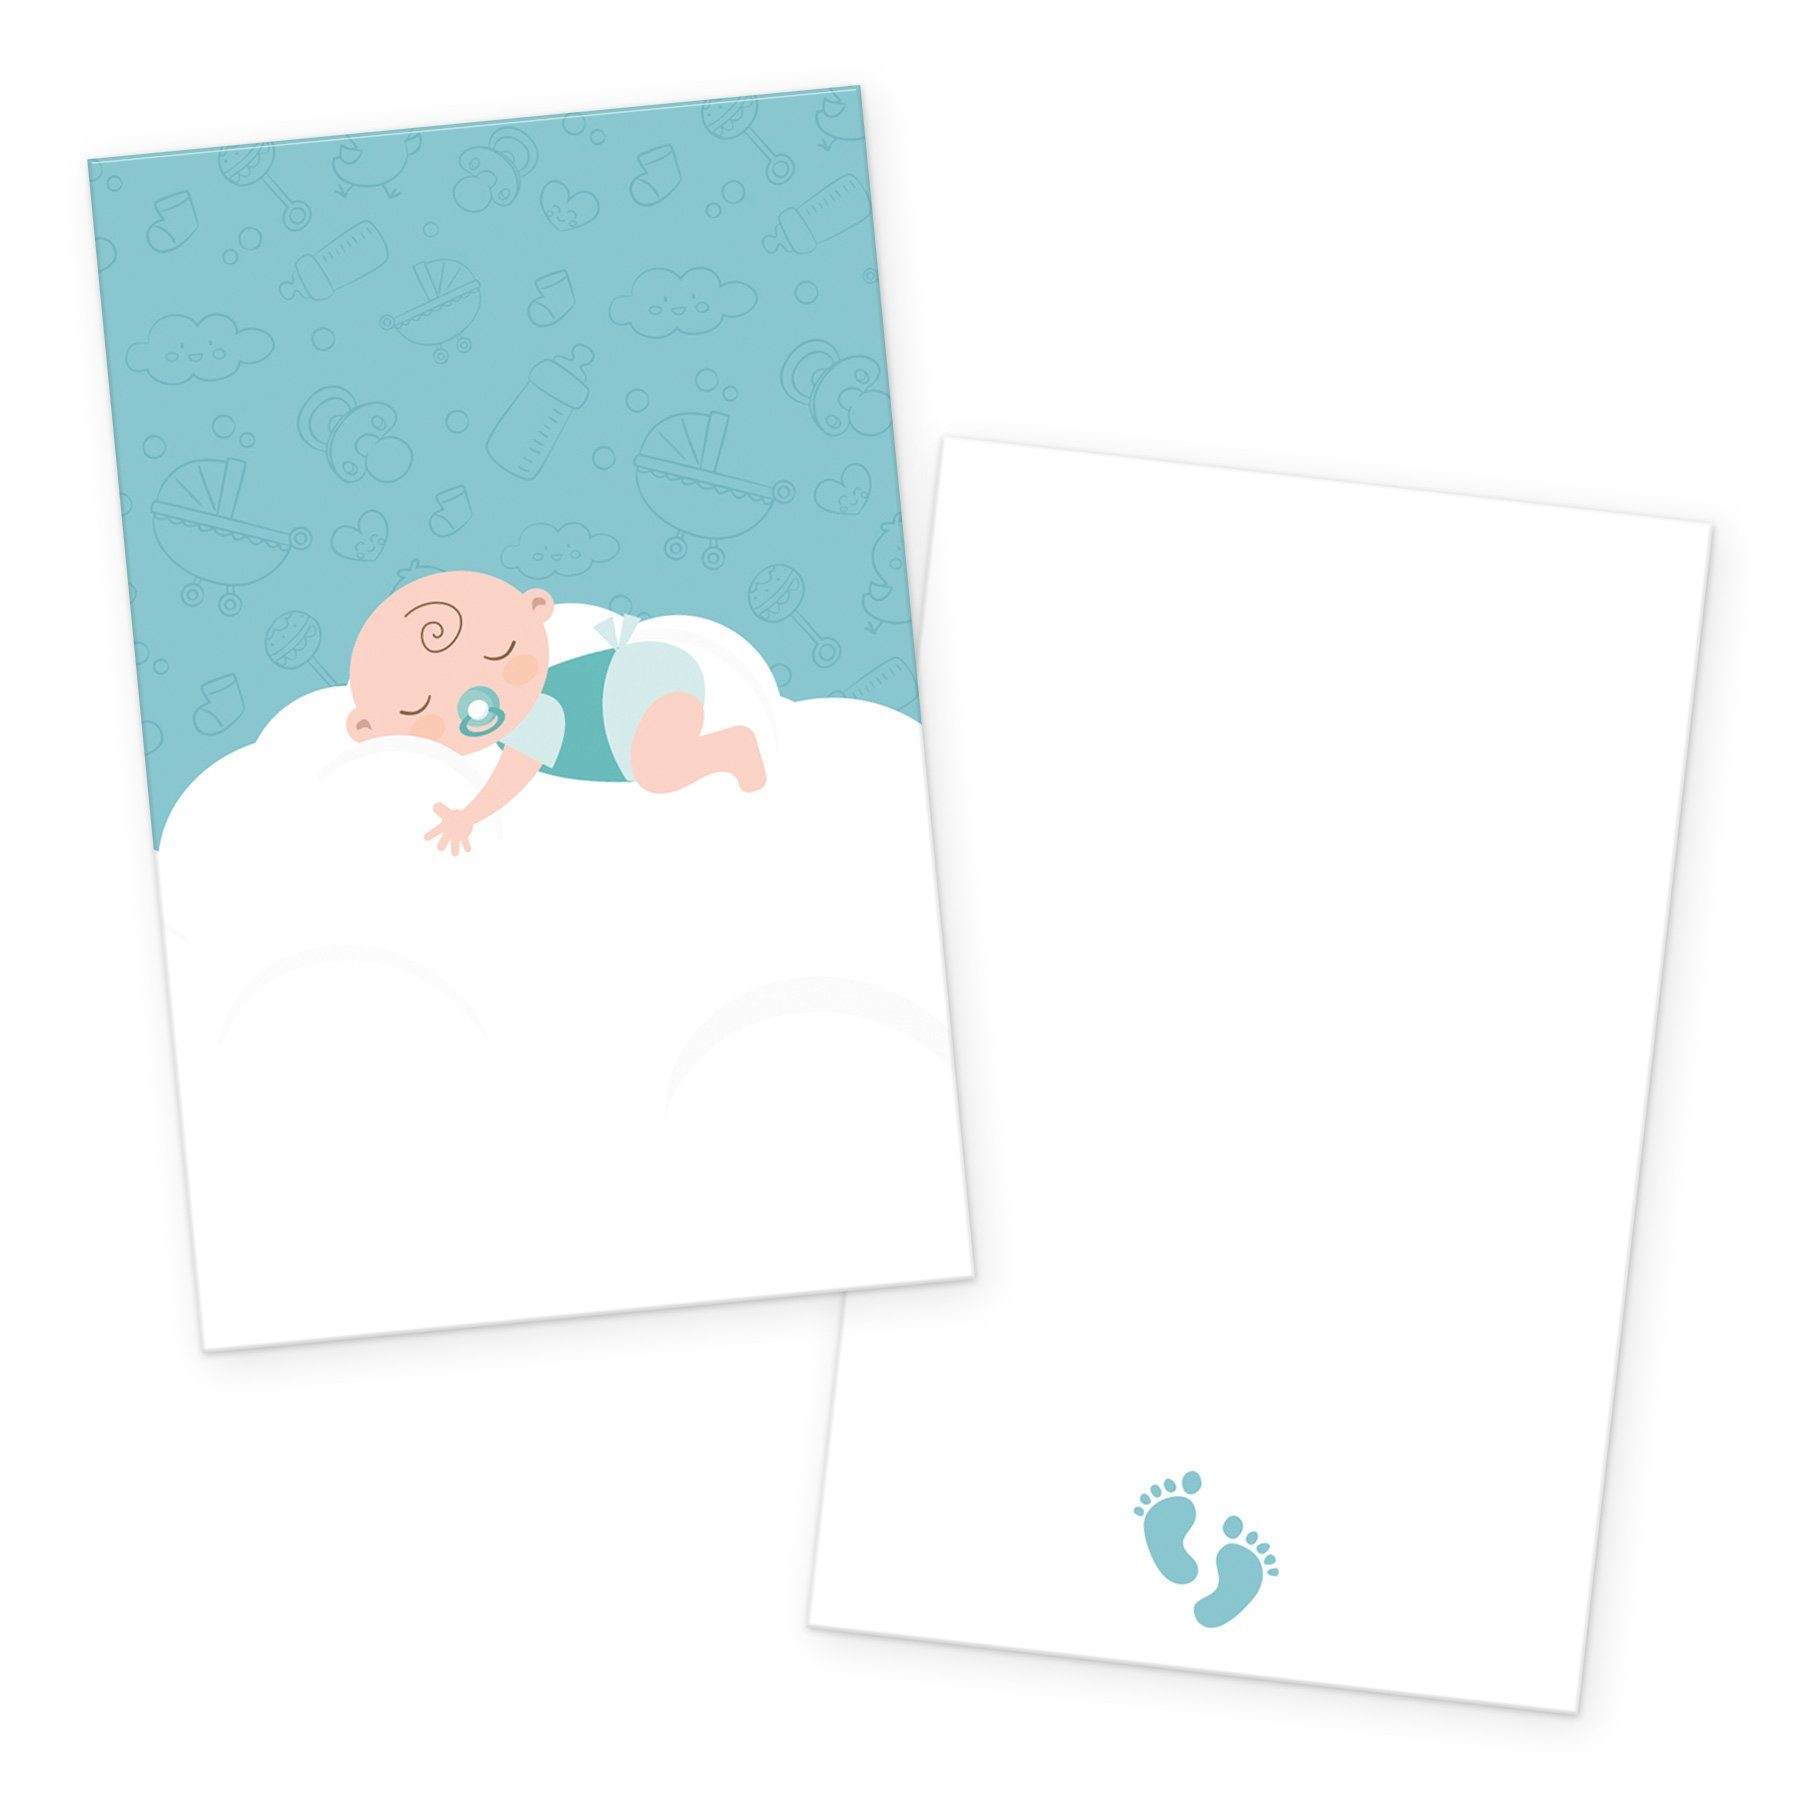 itenga Grußkarten itenga 24x Kärtchen "Baby auf Wolke" mintgrün pastell in Visitenkarten